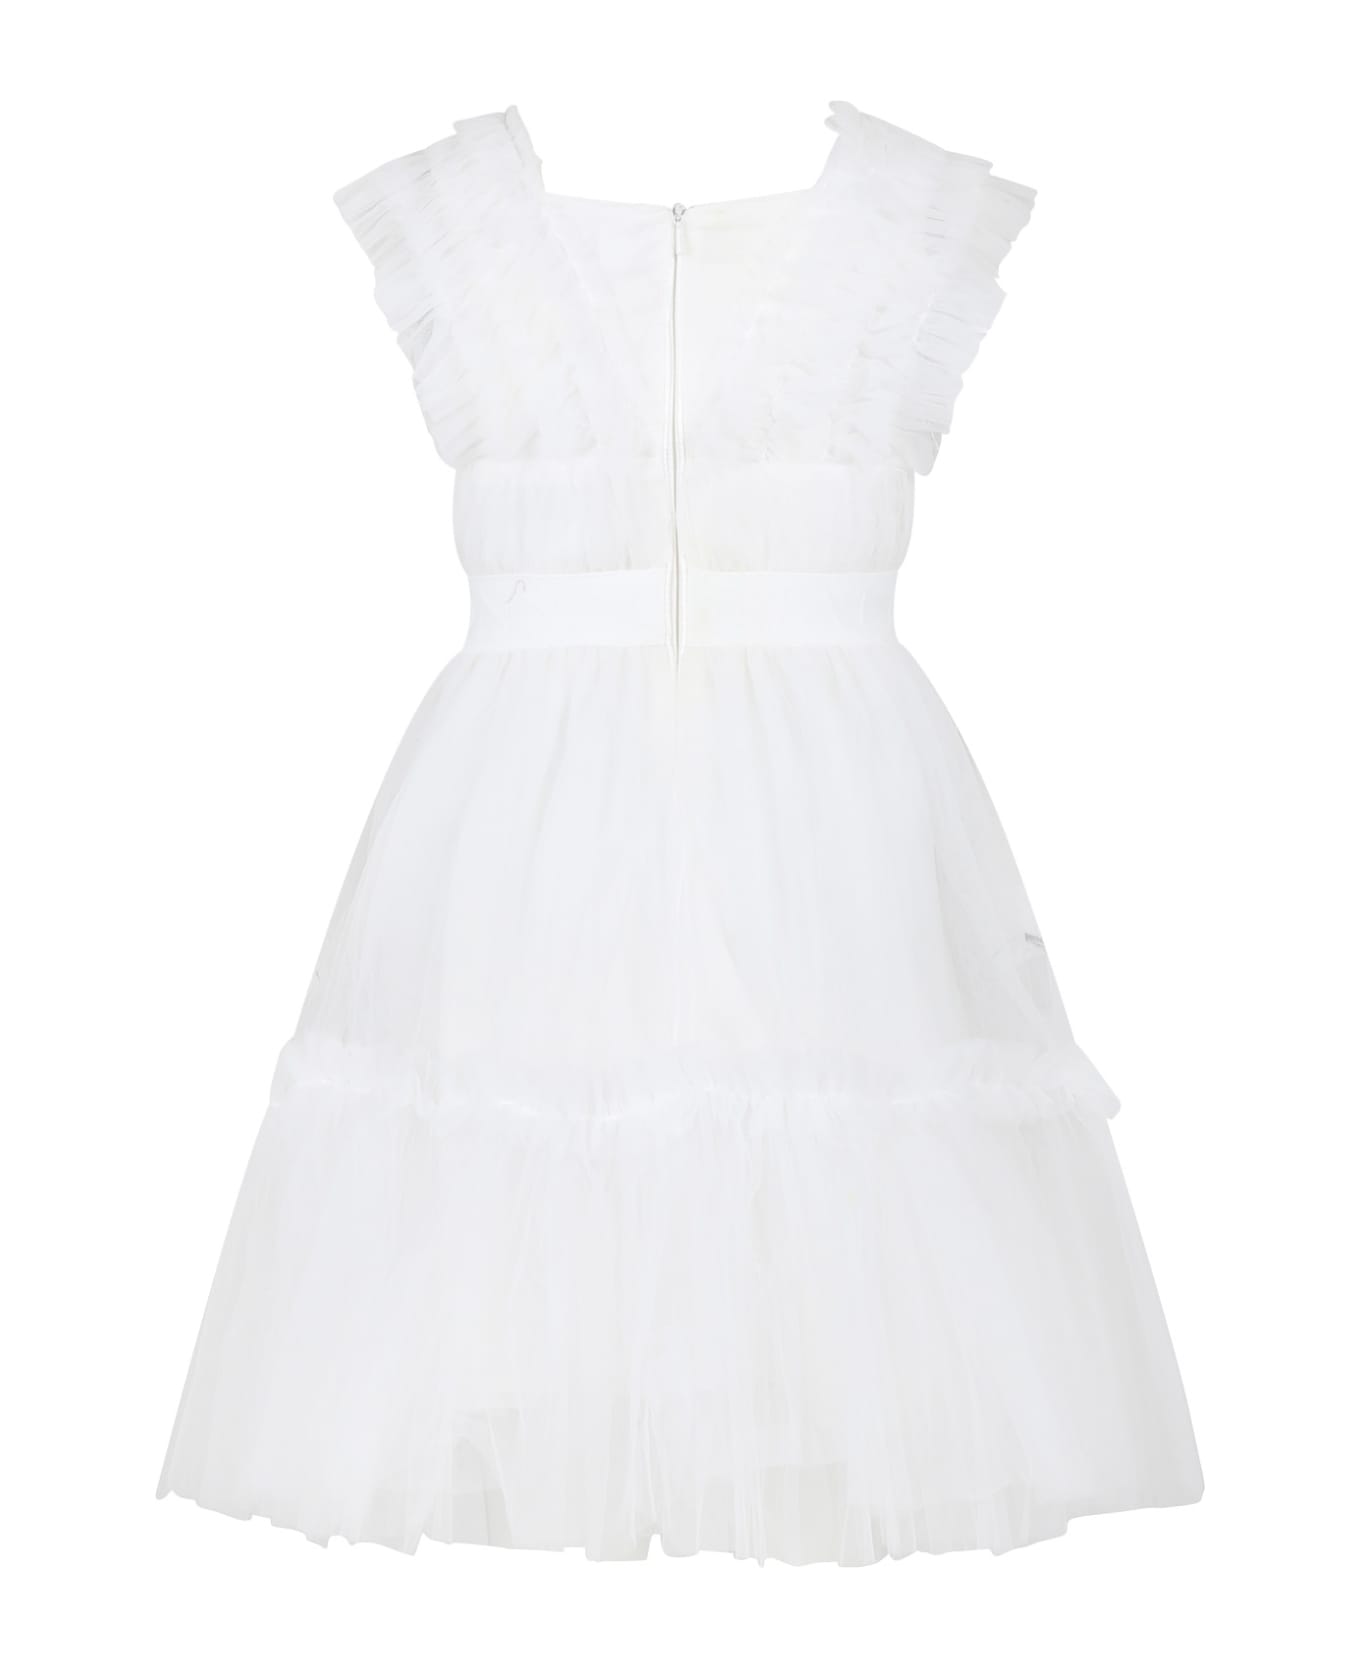 Monnalisa Elegant White Dress For Girl With Tulle - White